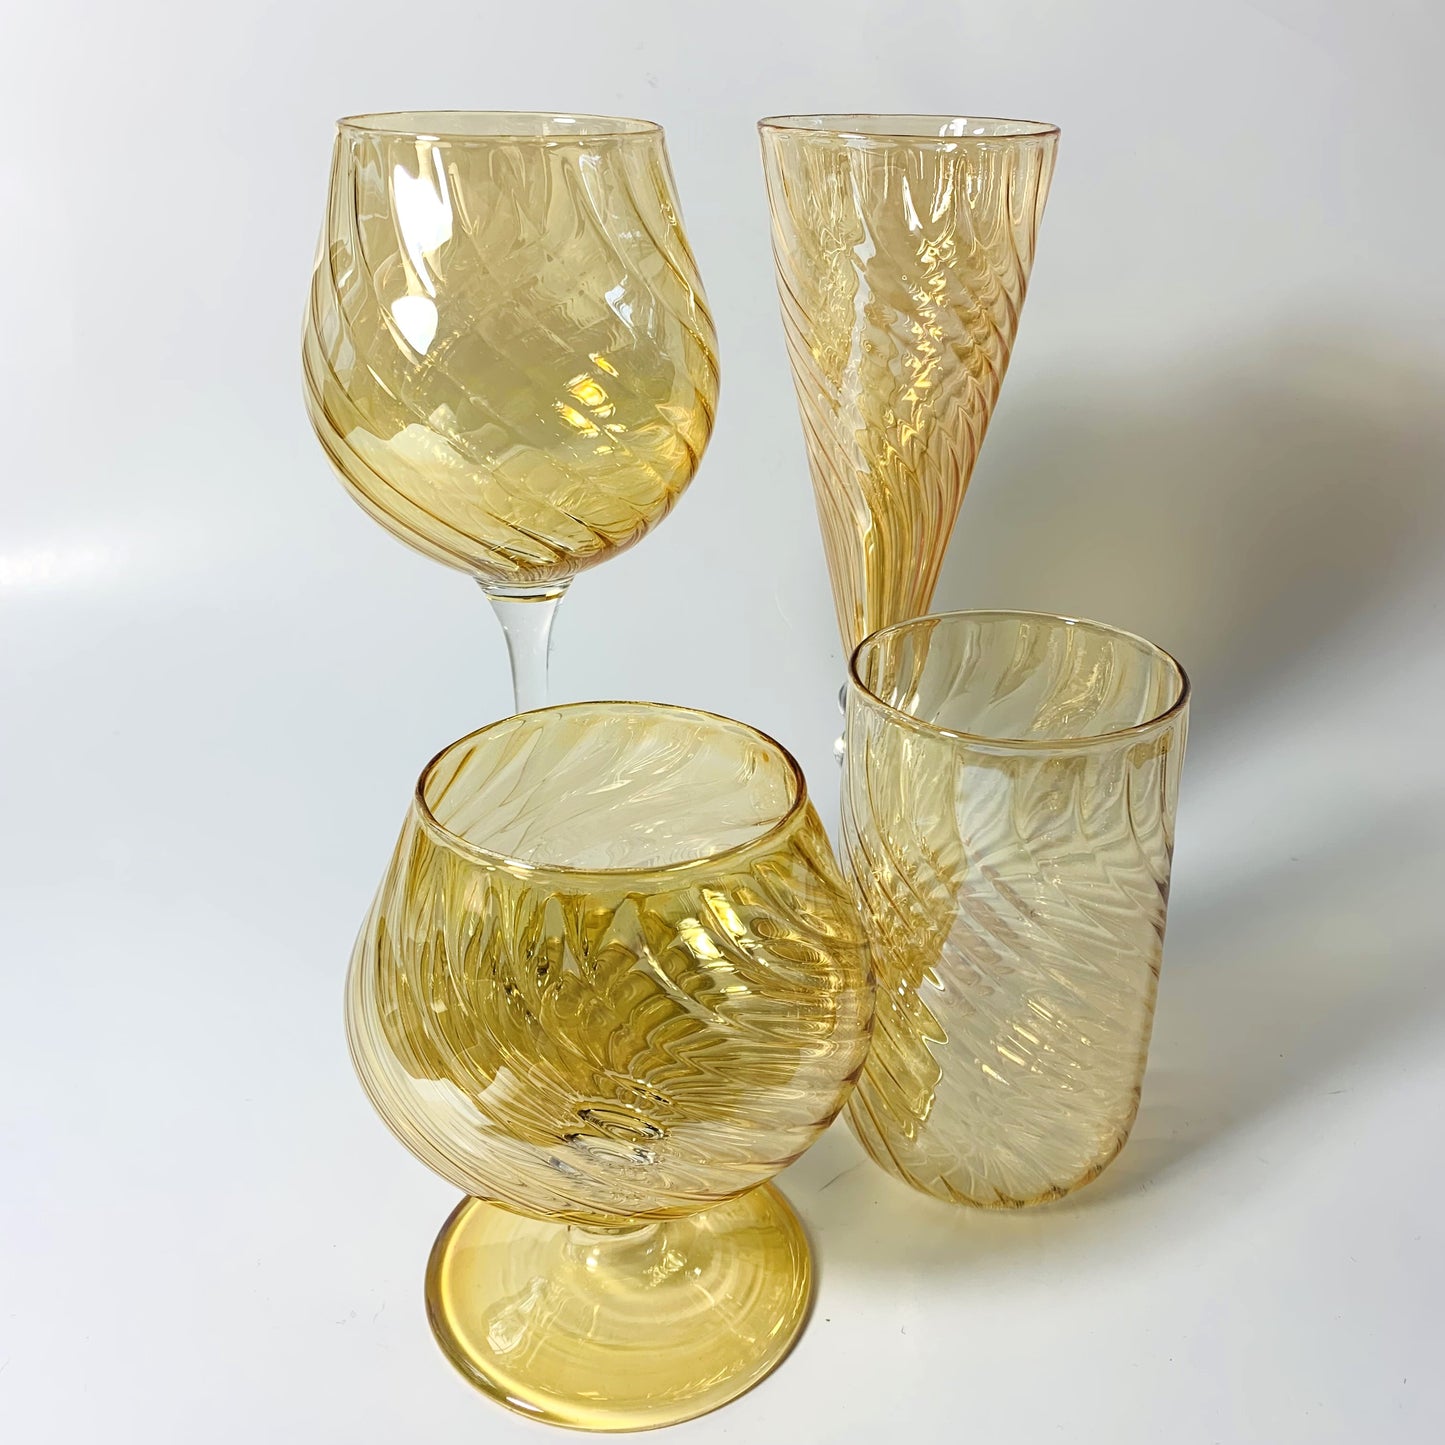 Blown Glass Cognac Glass - Iridescent